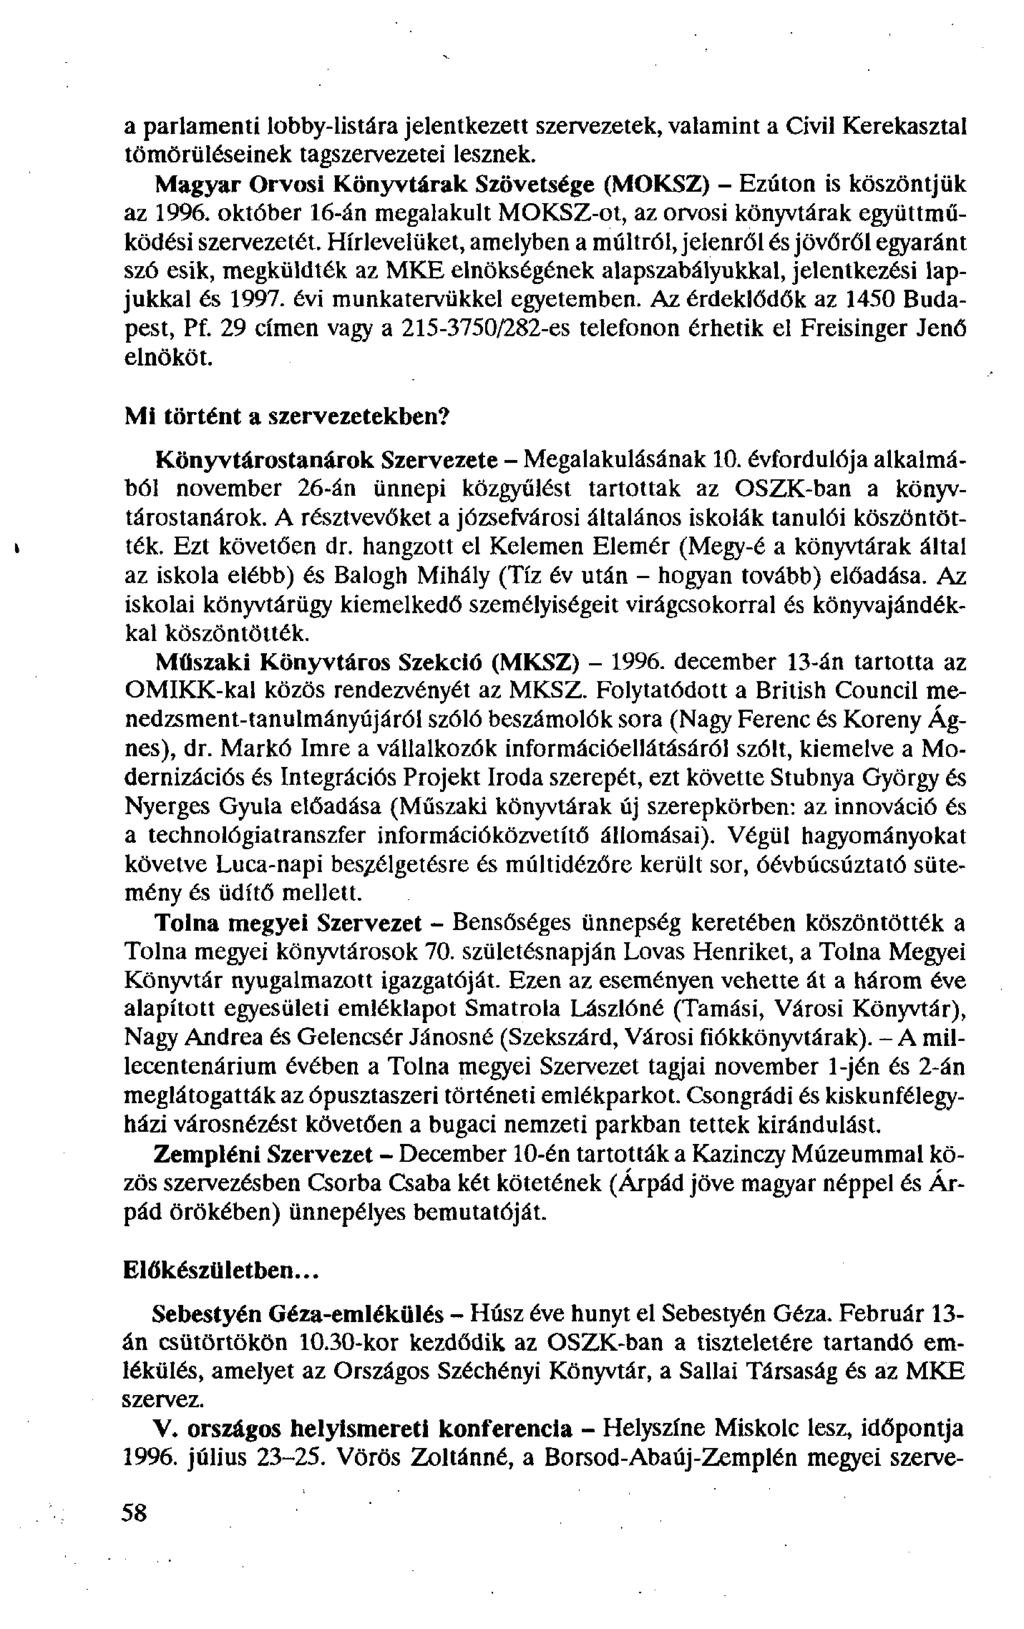 a parlamenti lobby-listára jelentkezett szervezetek, valamint a Civil Kerekasztal tömörüléseinek tagszervezetei lesznek. Magyar Orvosi Könyvtárak Szövetsége (MOKSZ) - Ezúton is köszöntjük az 1996.